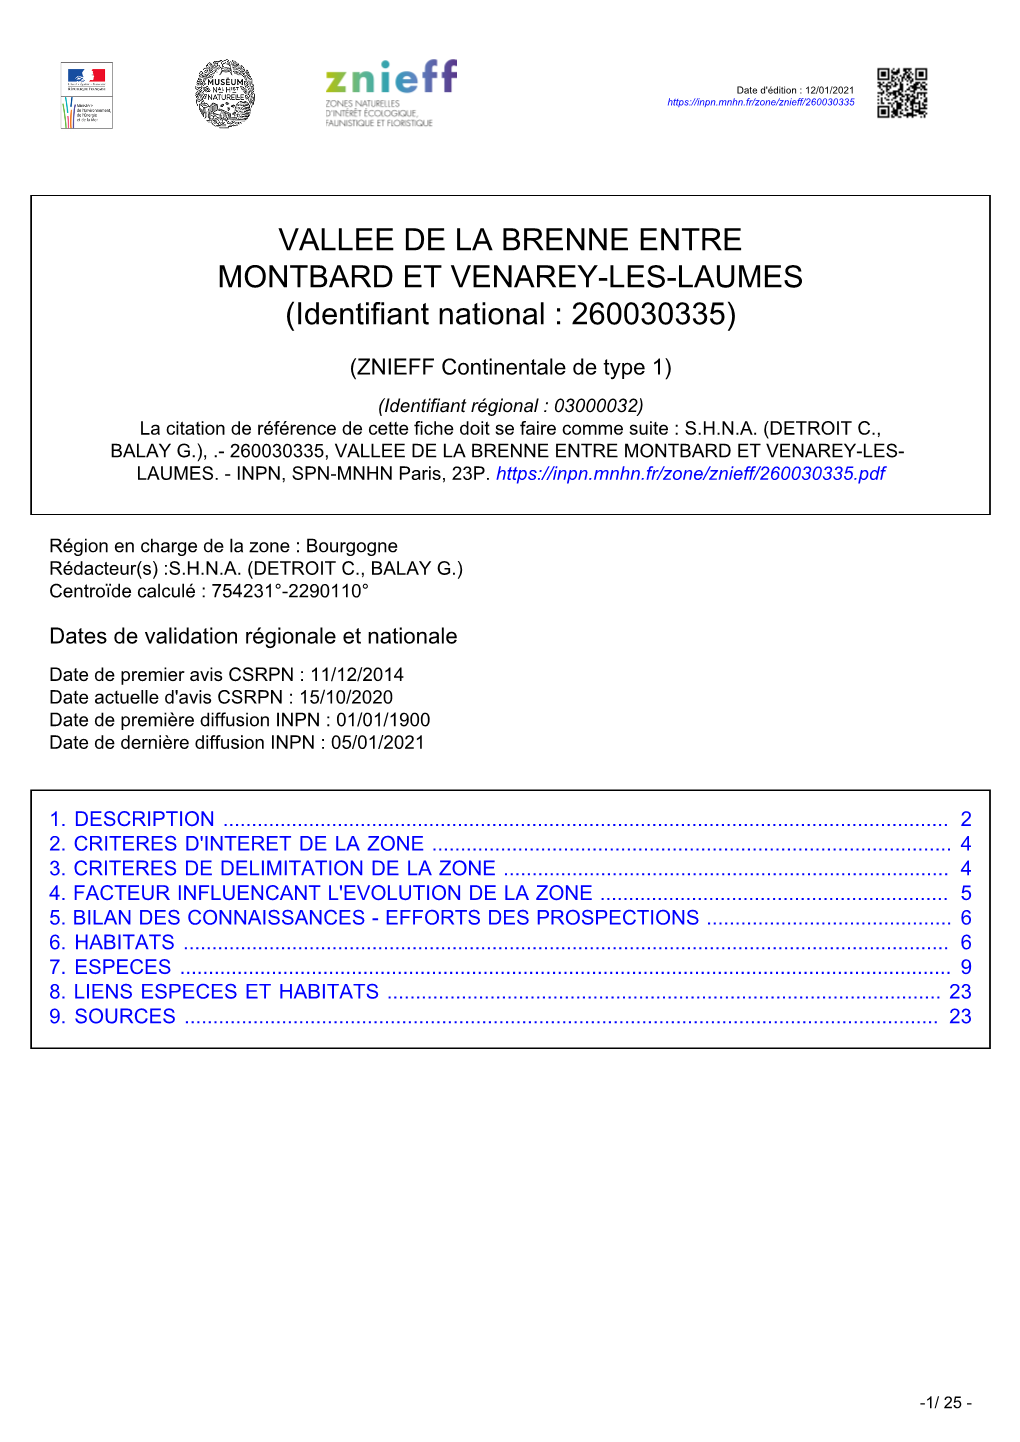 VALLEE DE LA BRENNE ENTRE MONTBARD ET VENAREY-LES-LAUMES (Identifiant National : 260030335)